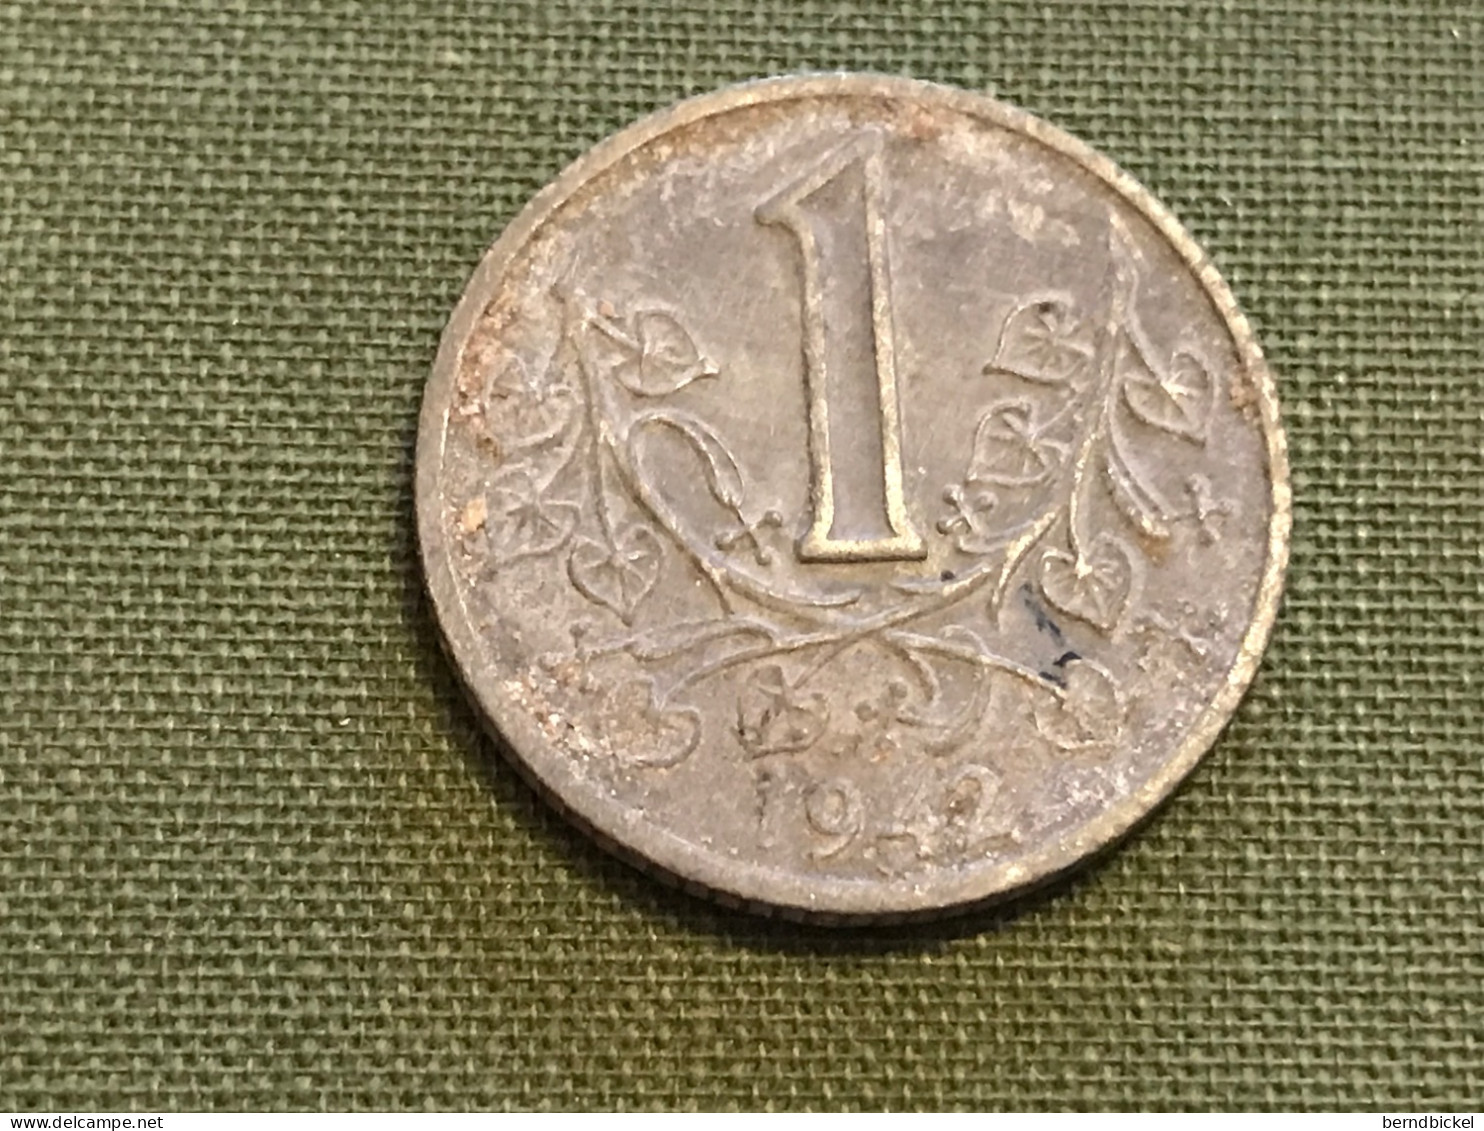 Münze Münzen Umlaufmünze Böhmen Und Mähren 1 Krone 1942 - Military Coin Minting - WWII